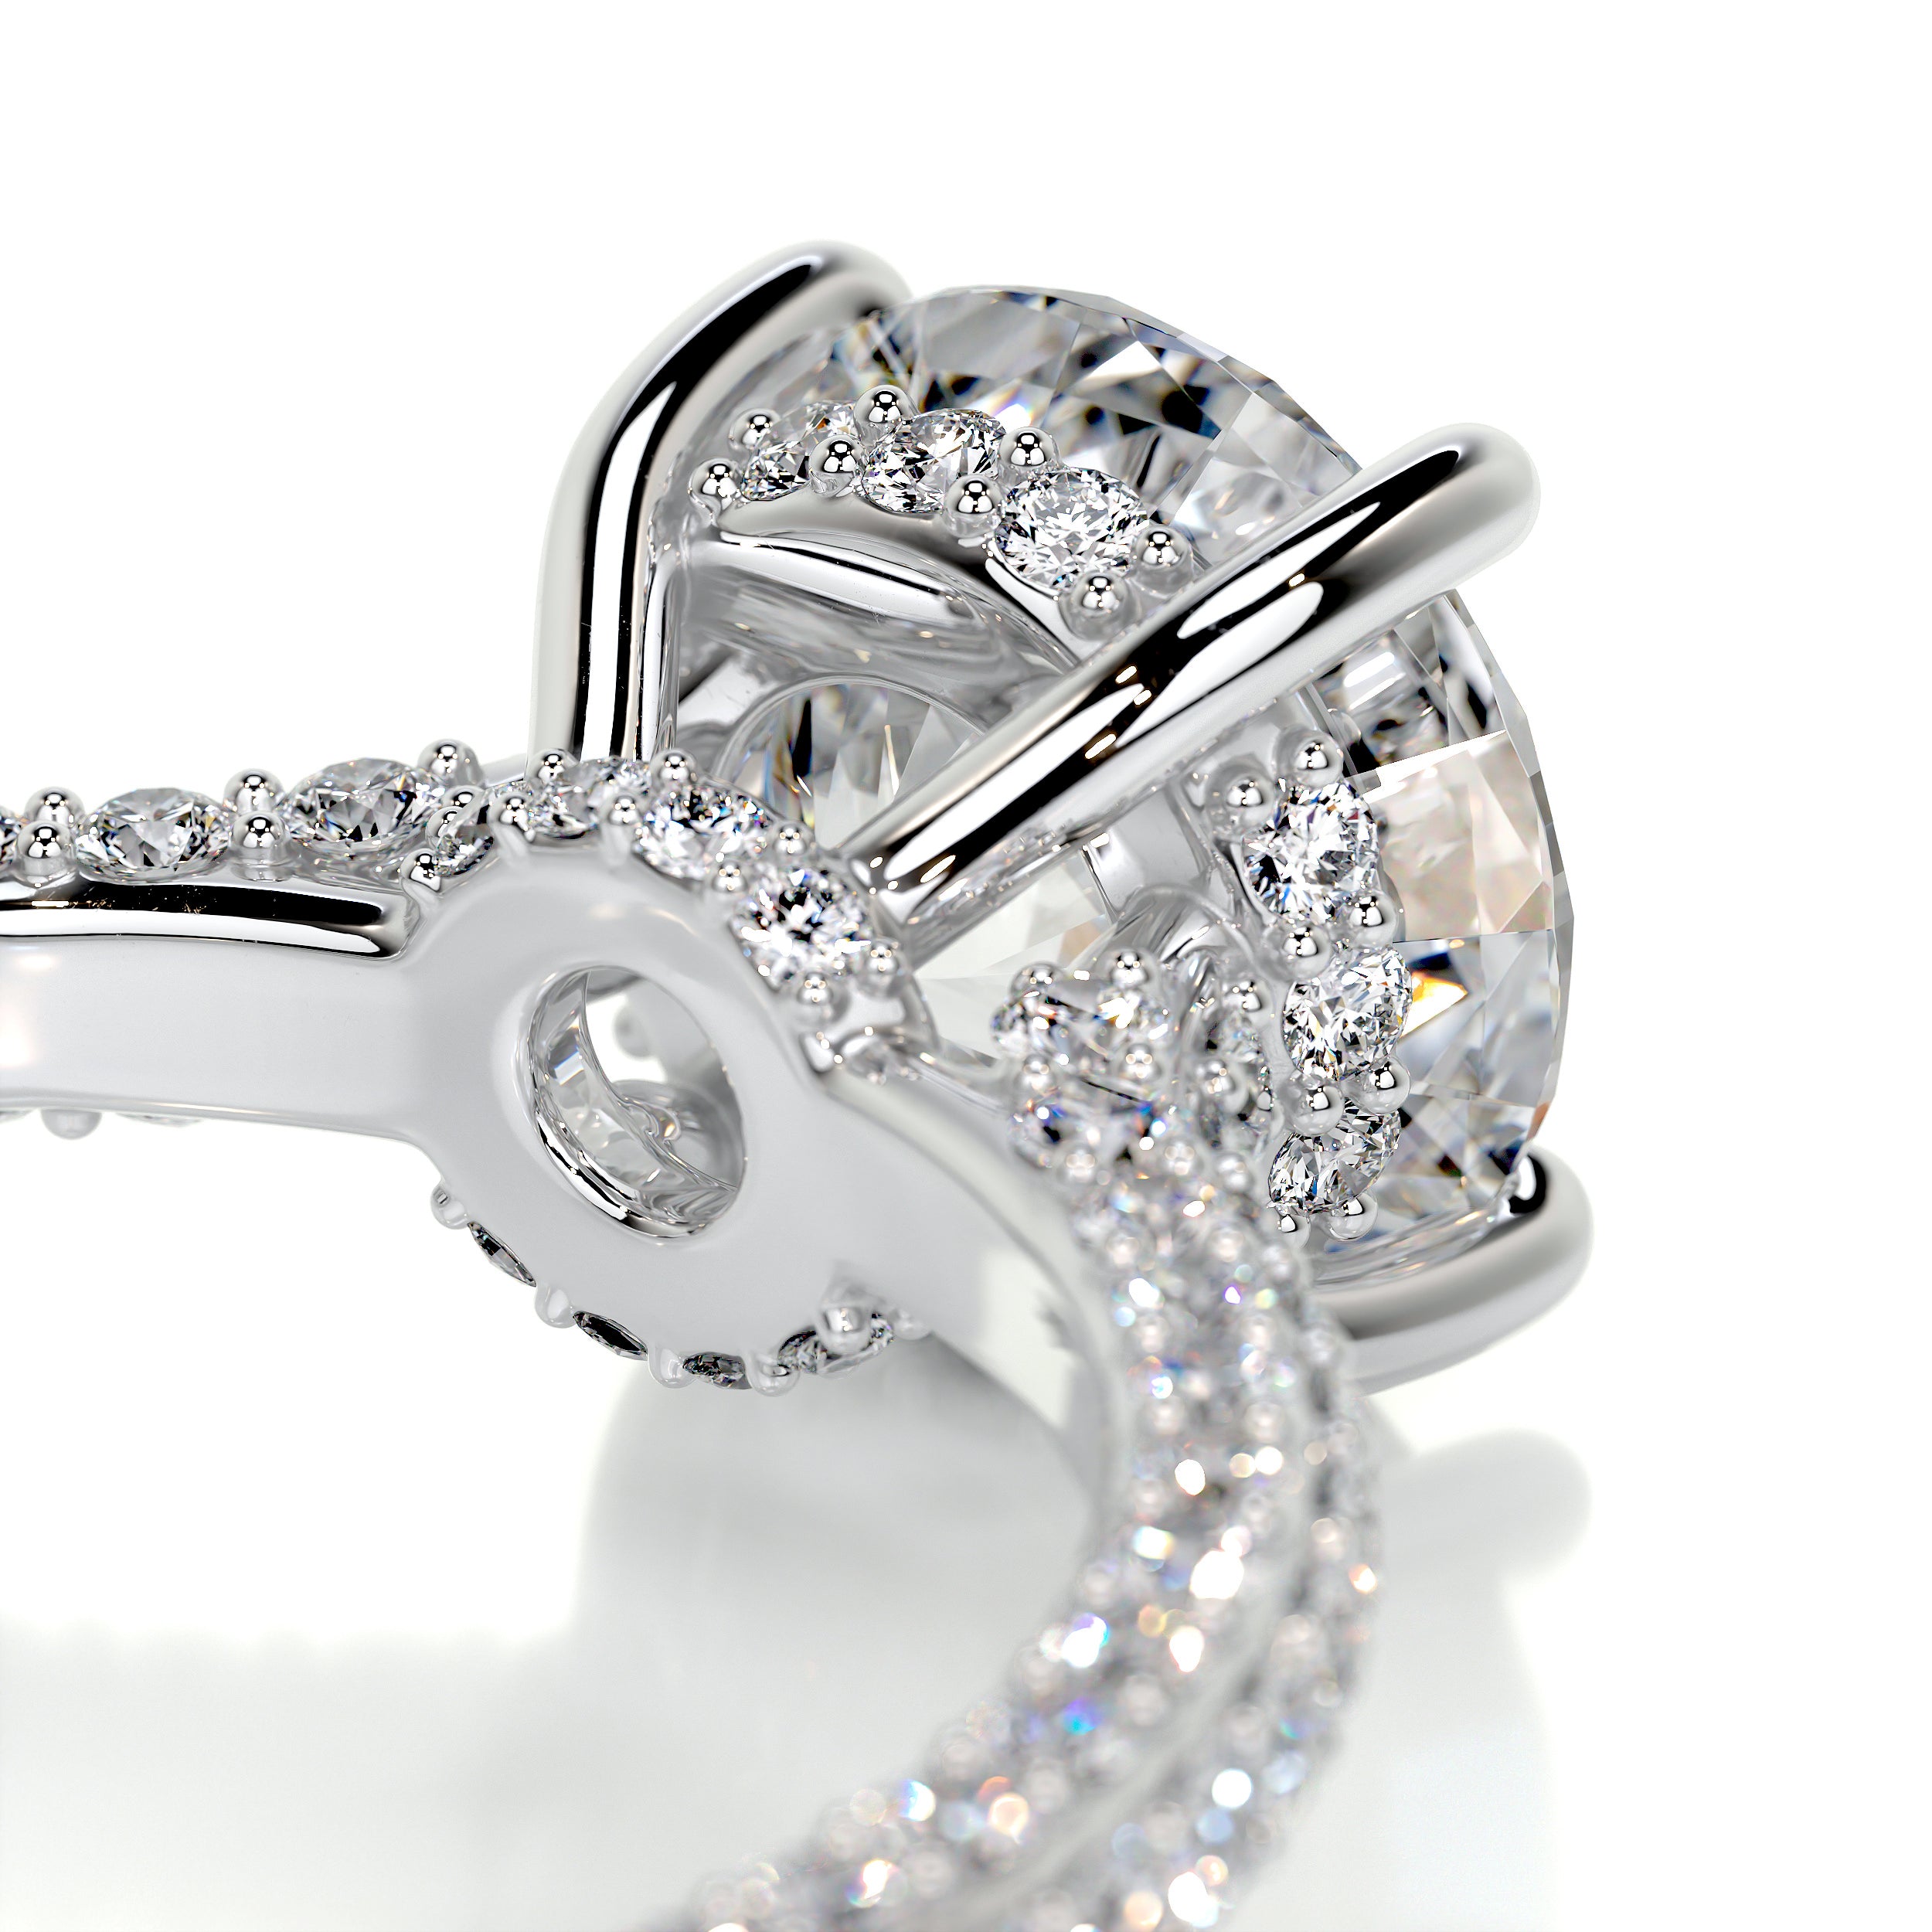 Michaela Diamond Engagement Ring -18K White Gold